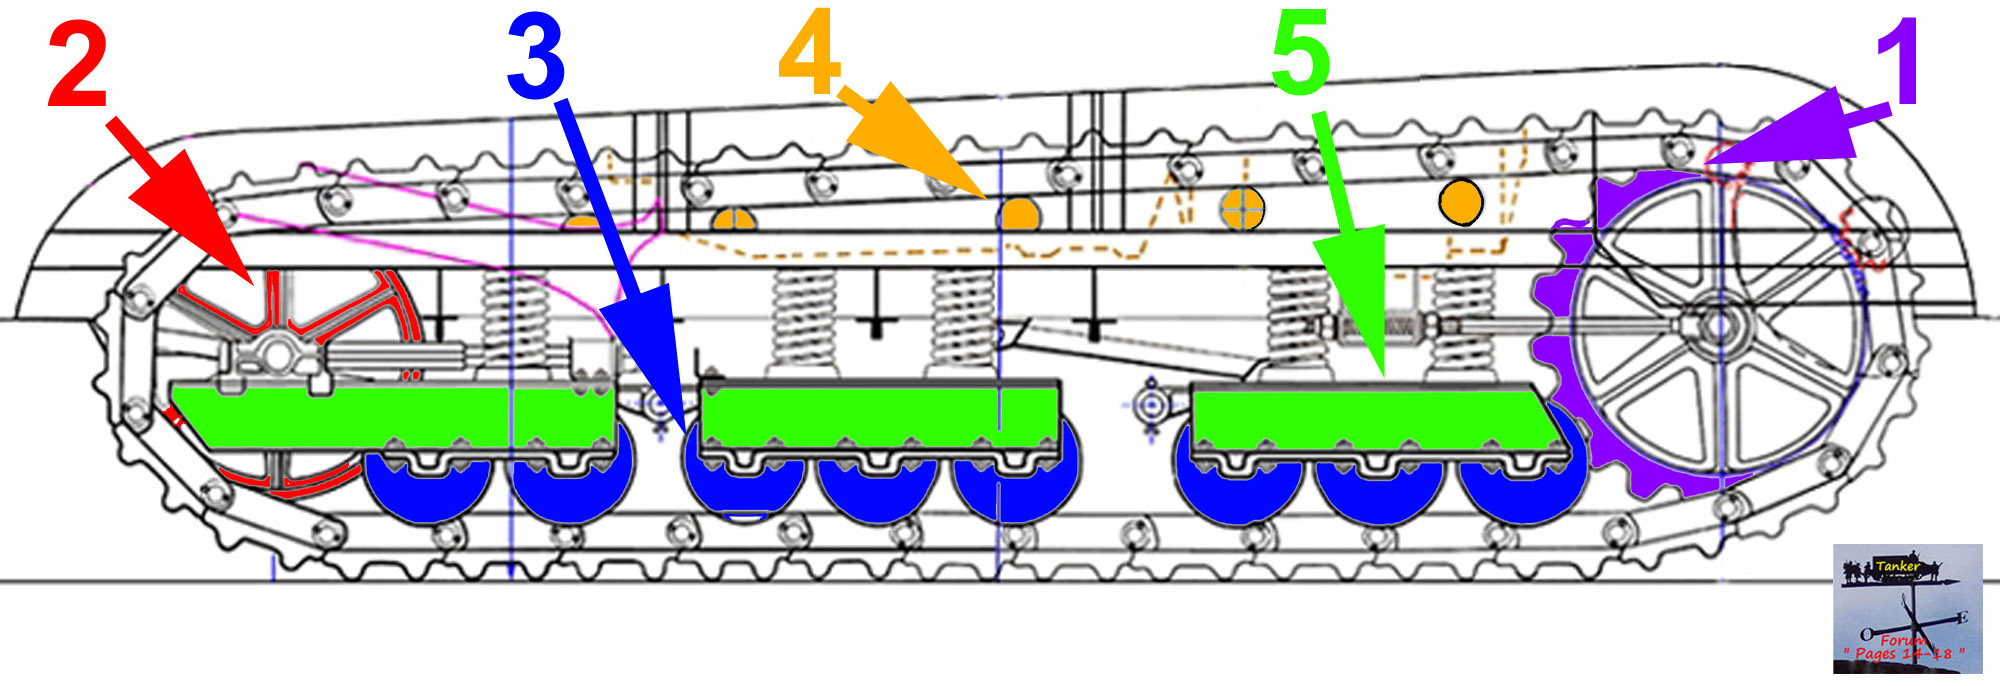 613 - St Chamond - Train de roulement (01a).jpg